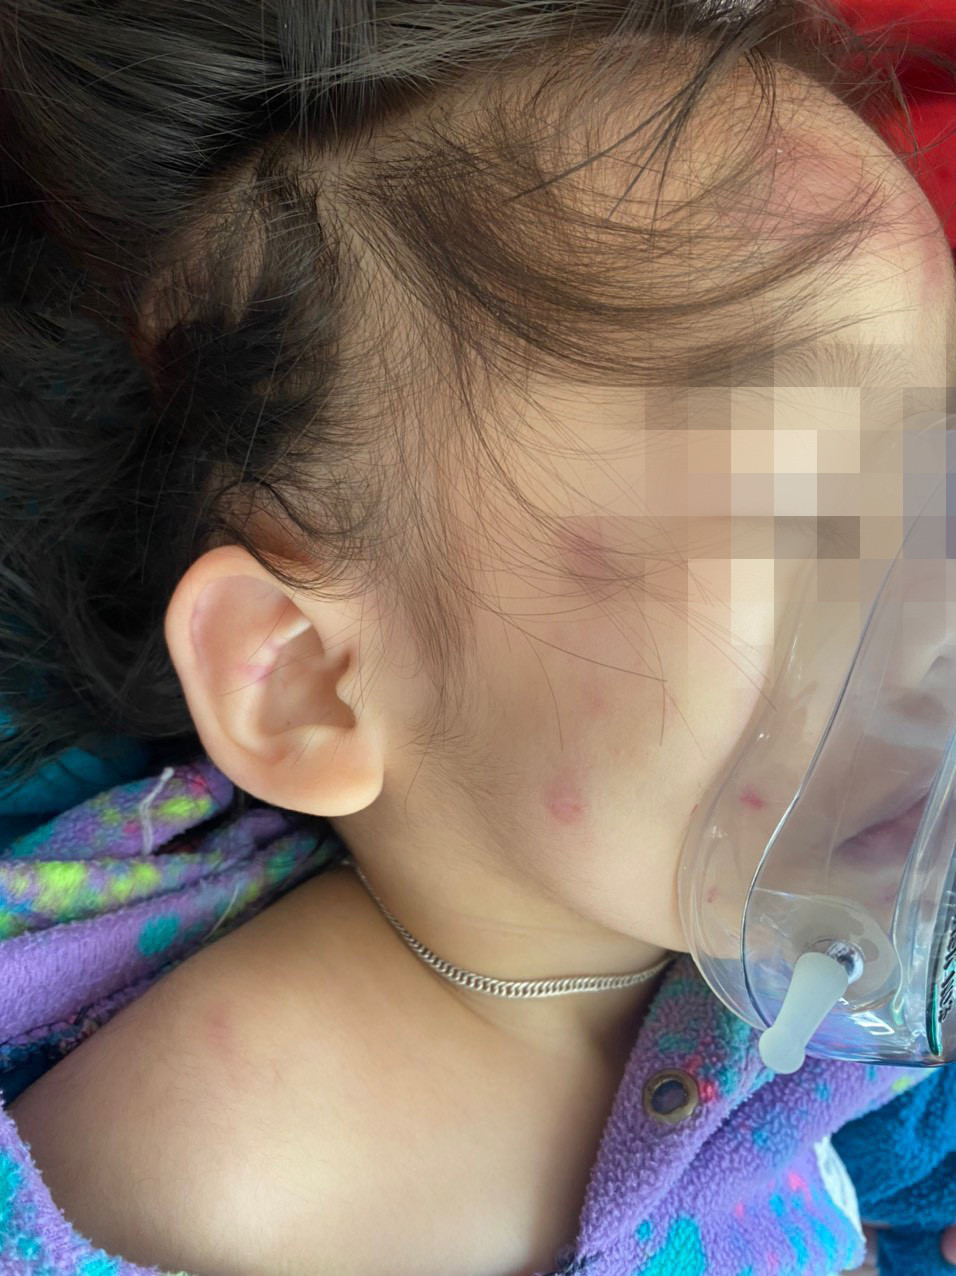 Bé gái 2 tuổi bị 2 bảo mẫu đạp ngã trong nhà tắm, nhiều lần dùng tay đánh - Ảnh 2.